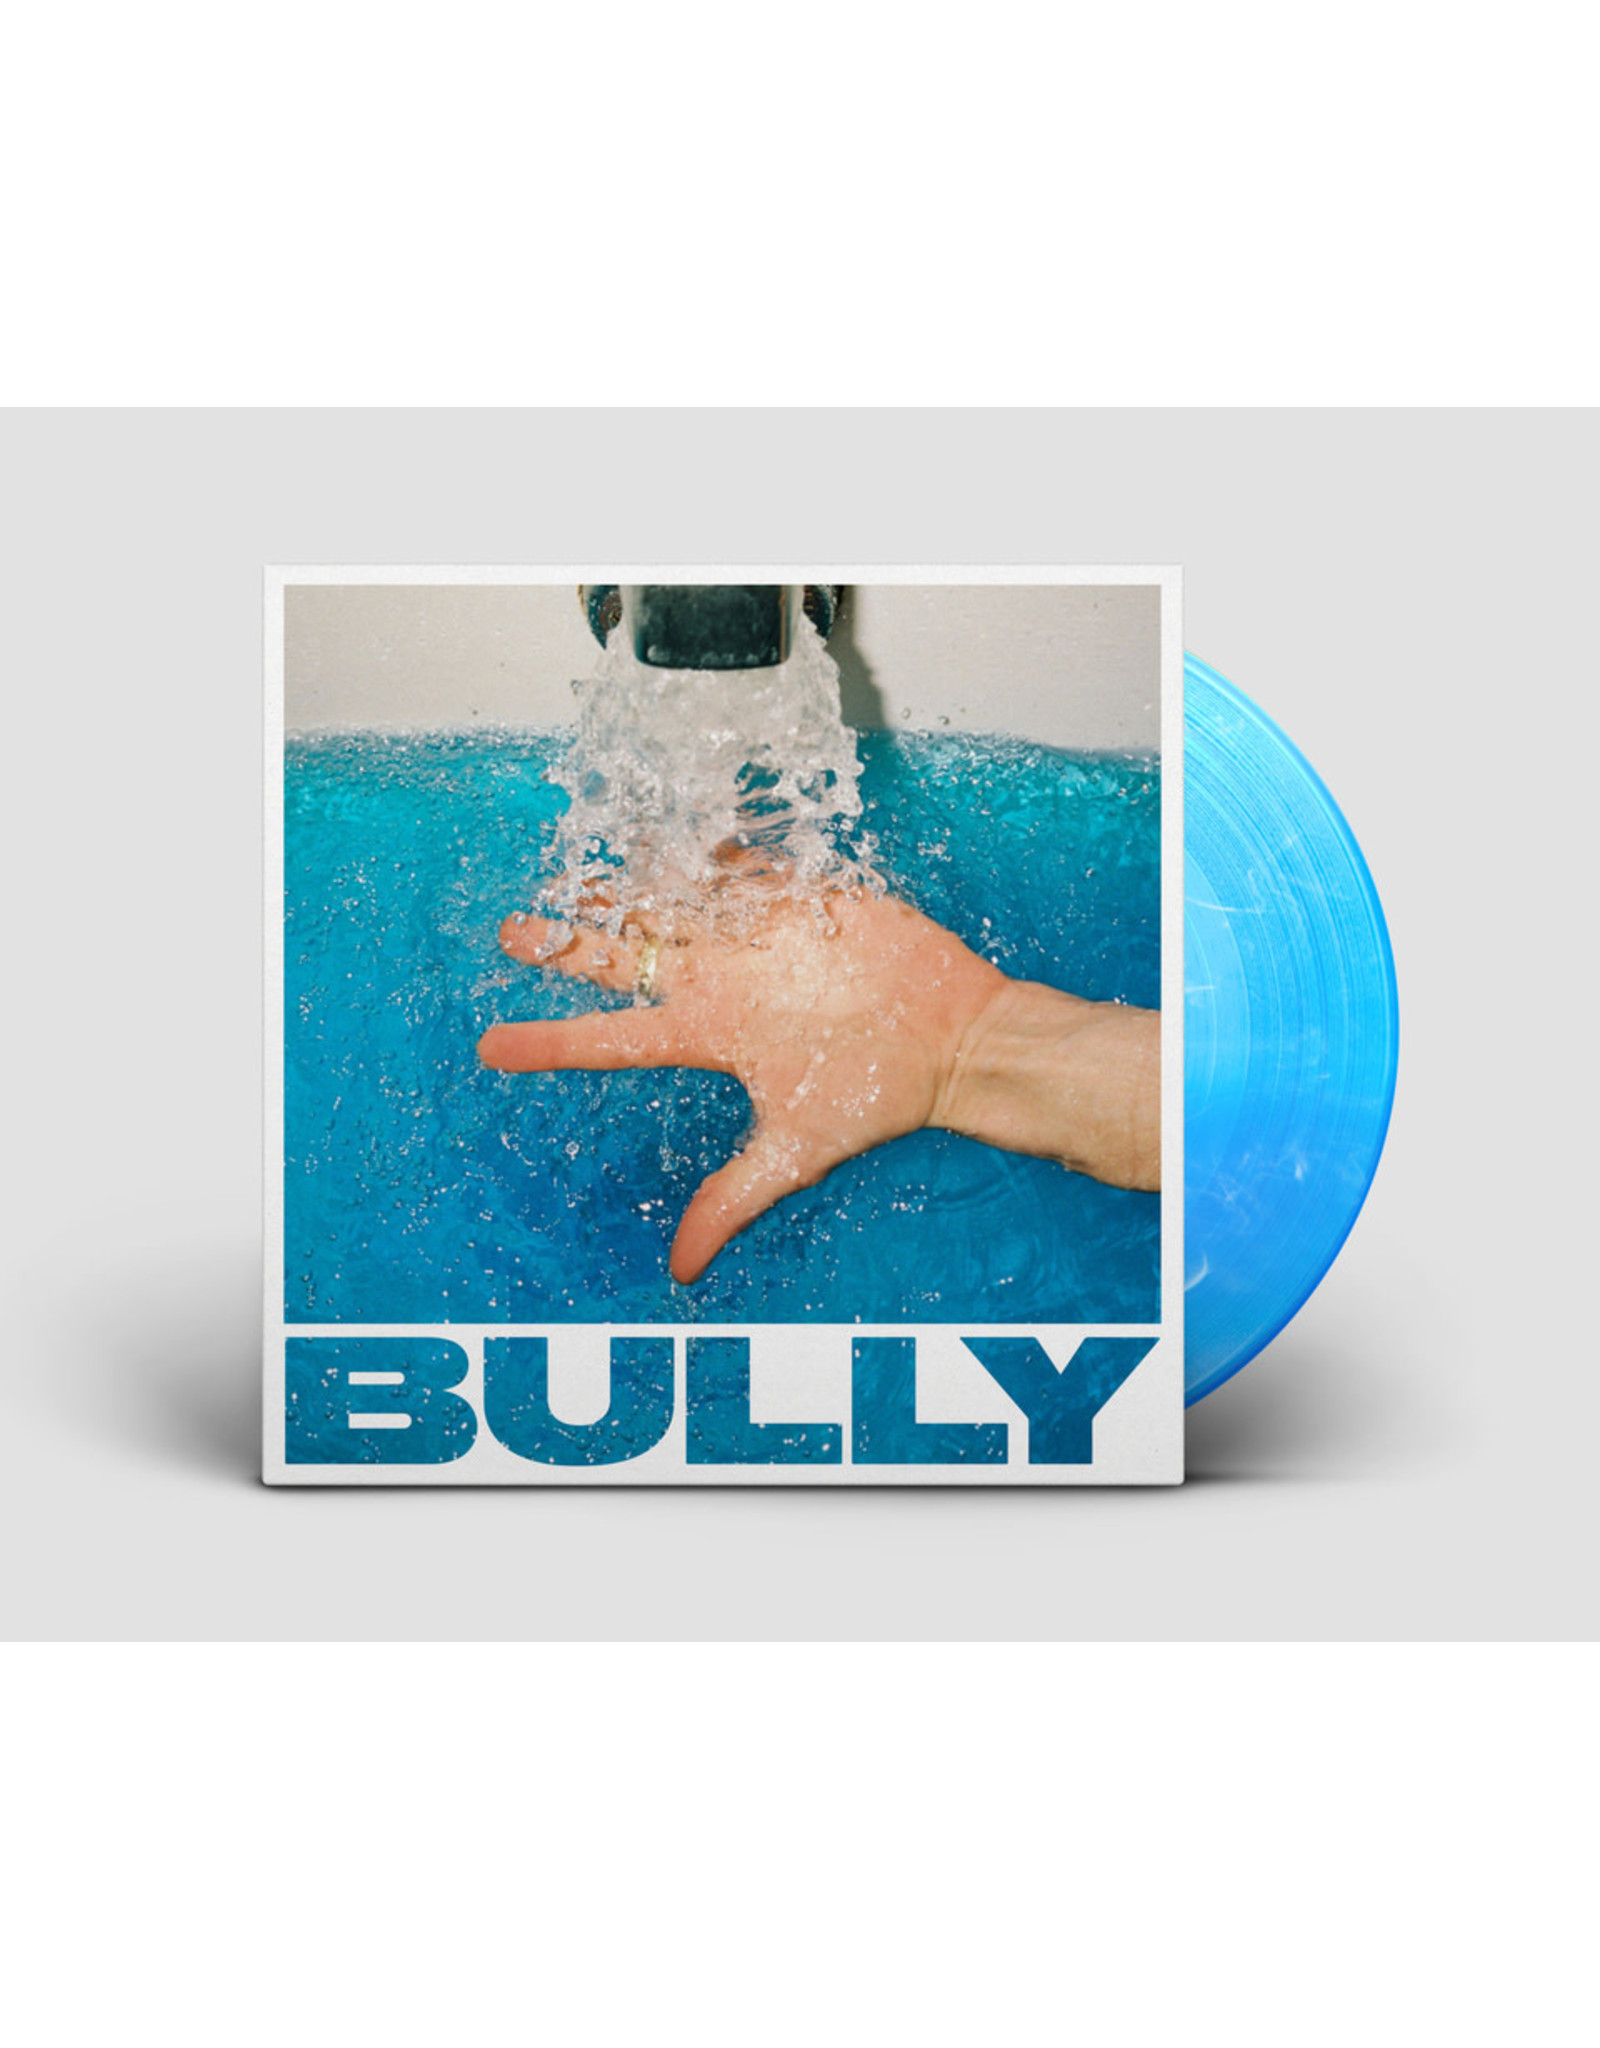 Bully - Squaregg (Loser Edition)